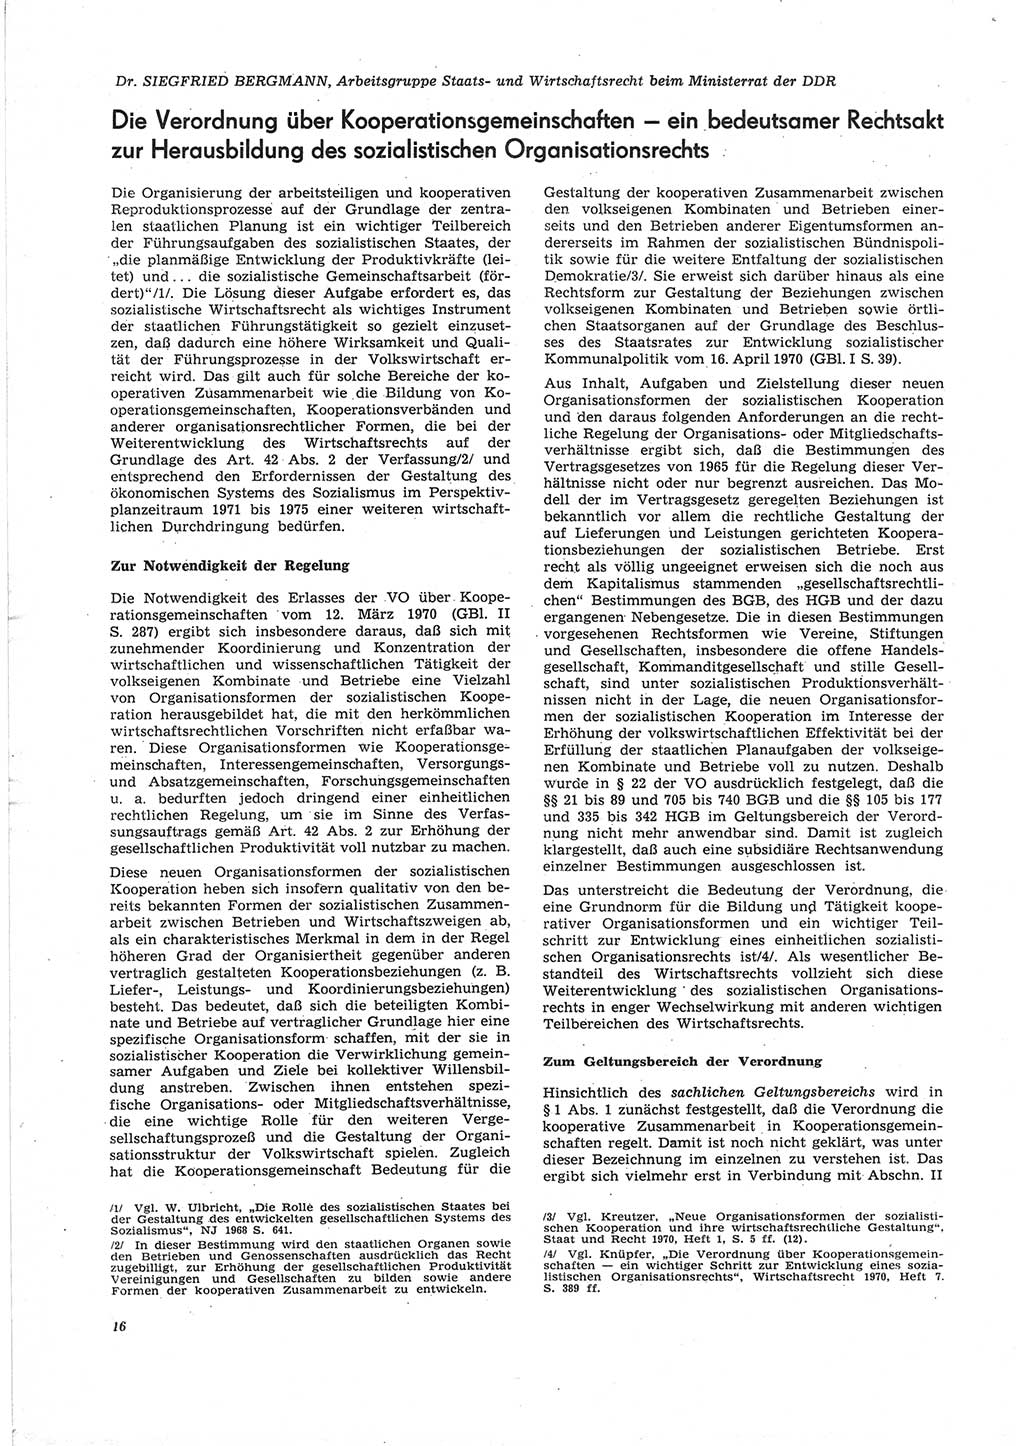 Neue Justiz (NJ), Zeitschrift für Recht und Rechtswissenschaft [Deutsche Demokratische Republik (DDR)], 25. Jahrgang 1971, Seite 16 (NJ DDR 1971, S. 16)